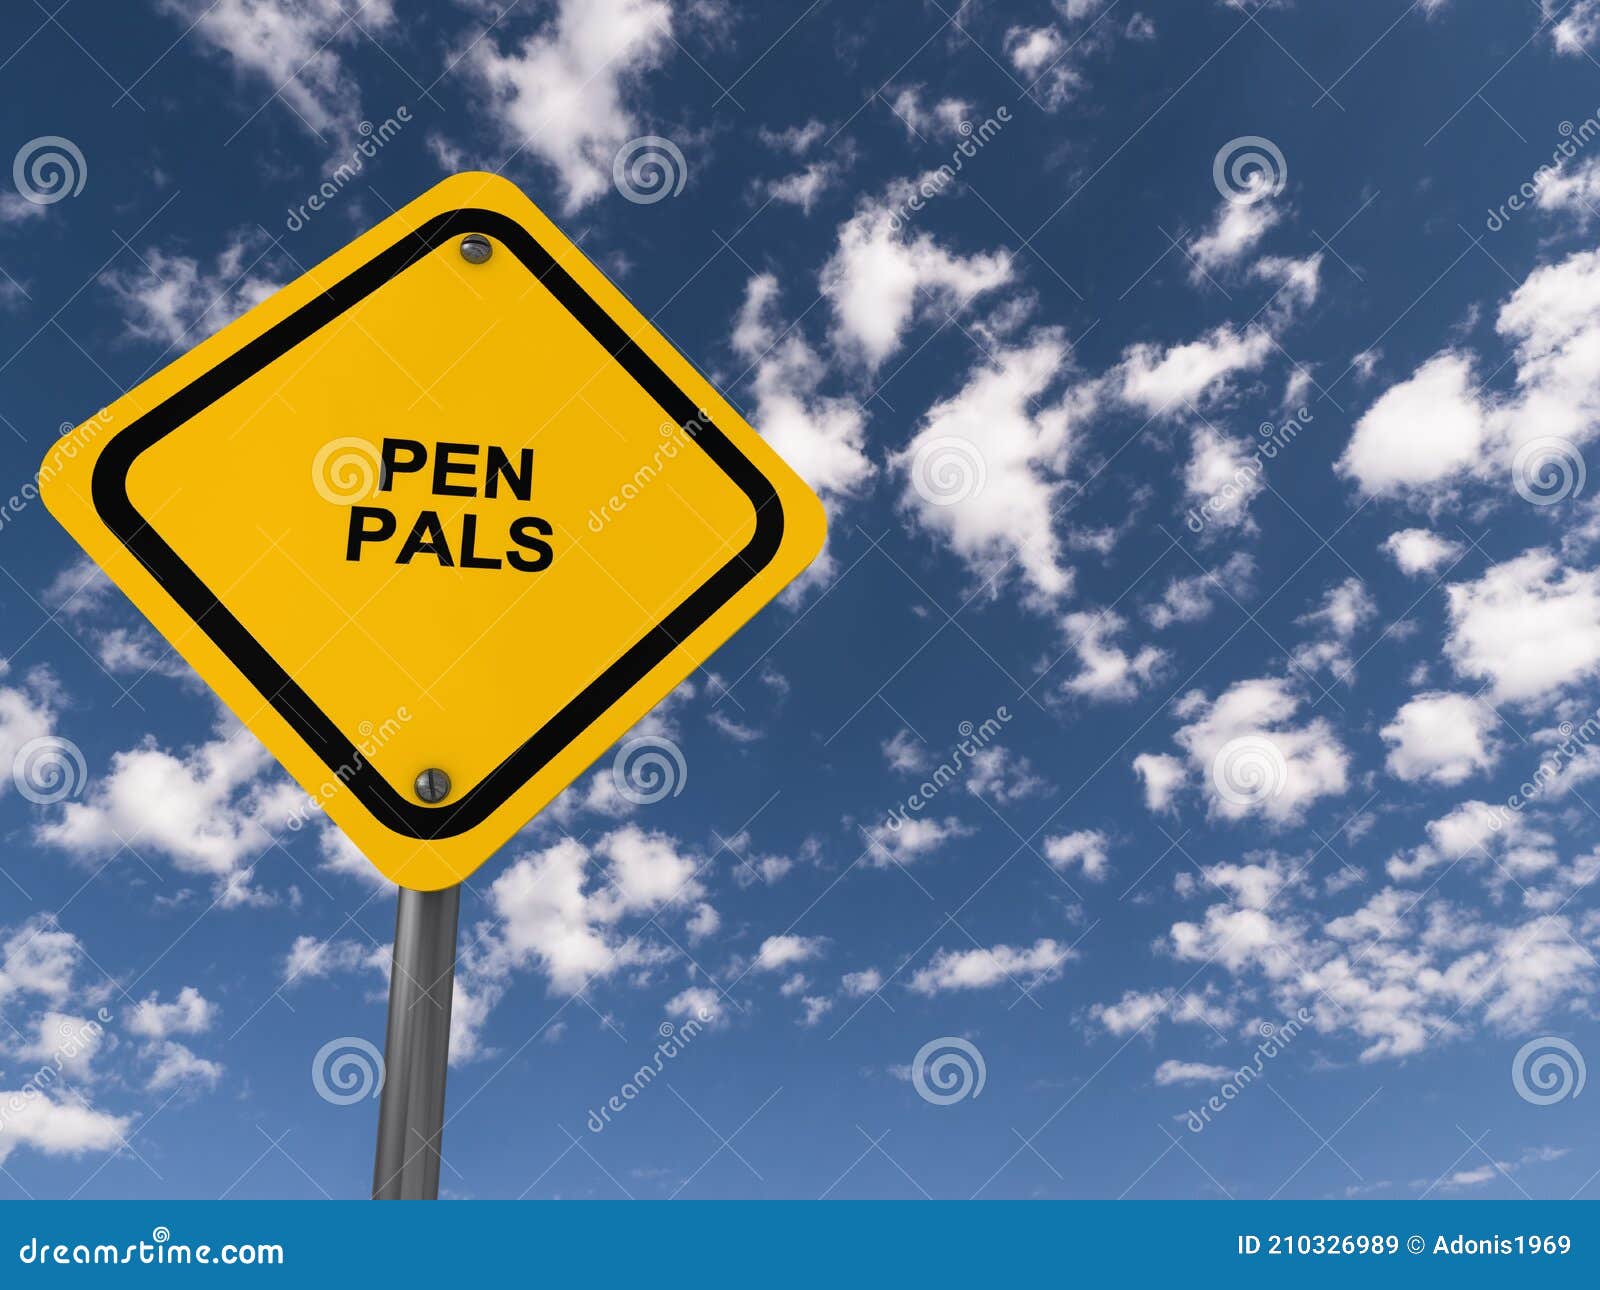 Safe pen pal sites